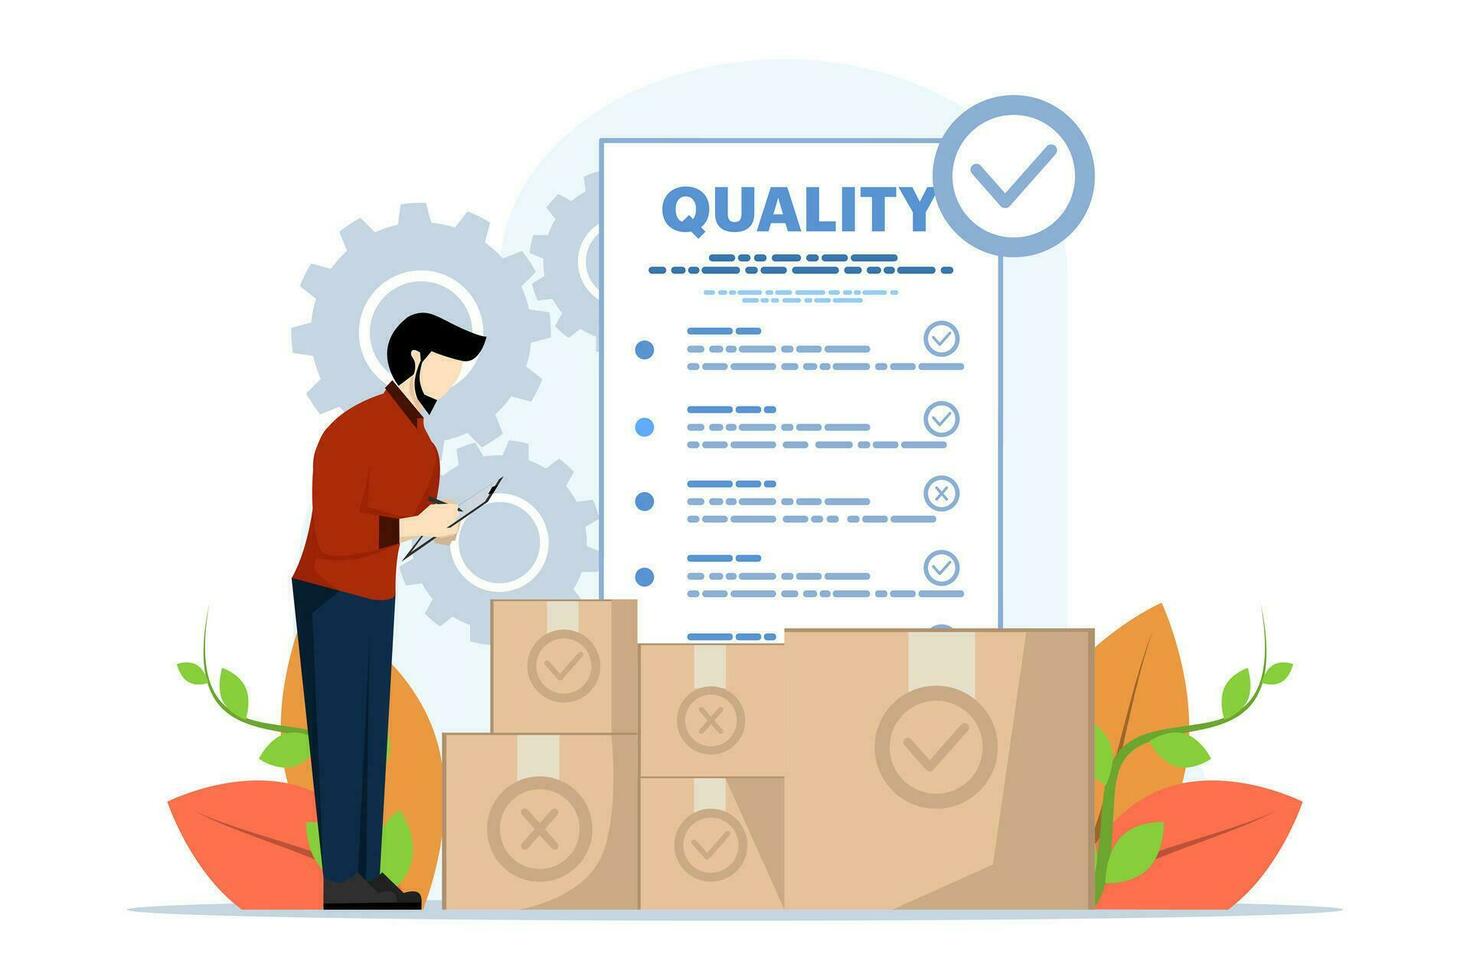 Product kwaliteit controle concept, mensen controleren Product kwaliteit met gevestigd normen. inspectie of testen procedures dat focus Aan vergadering vereisten. modern vlak vector illustratie.